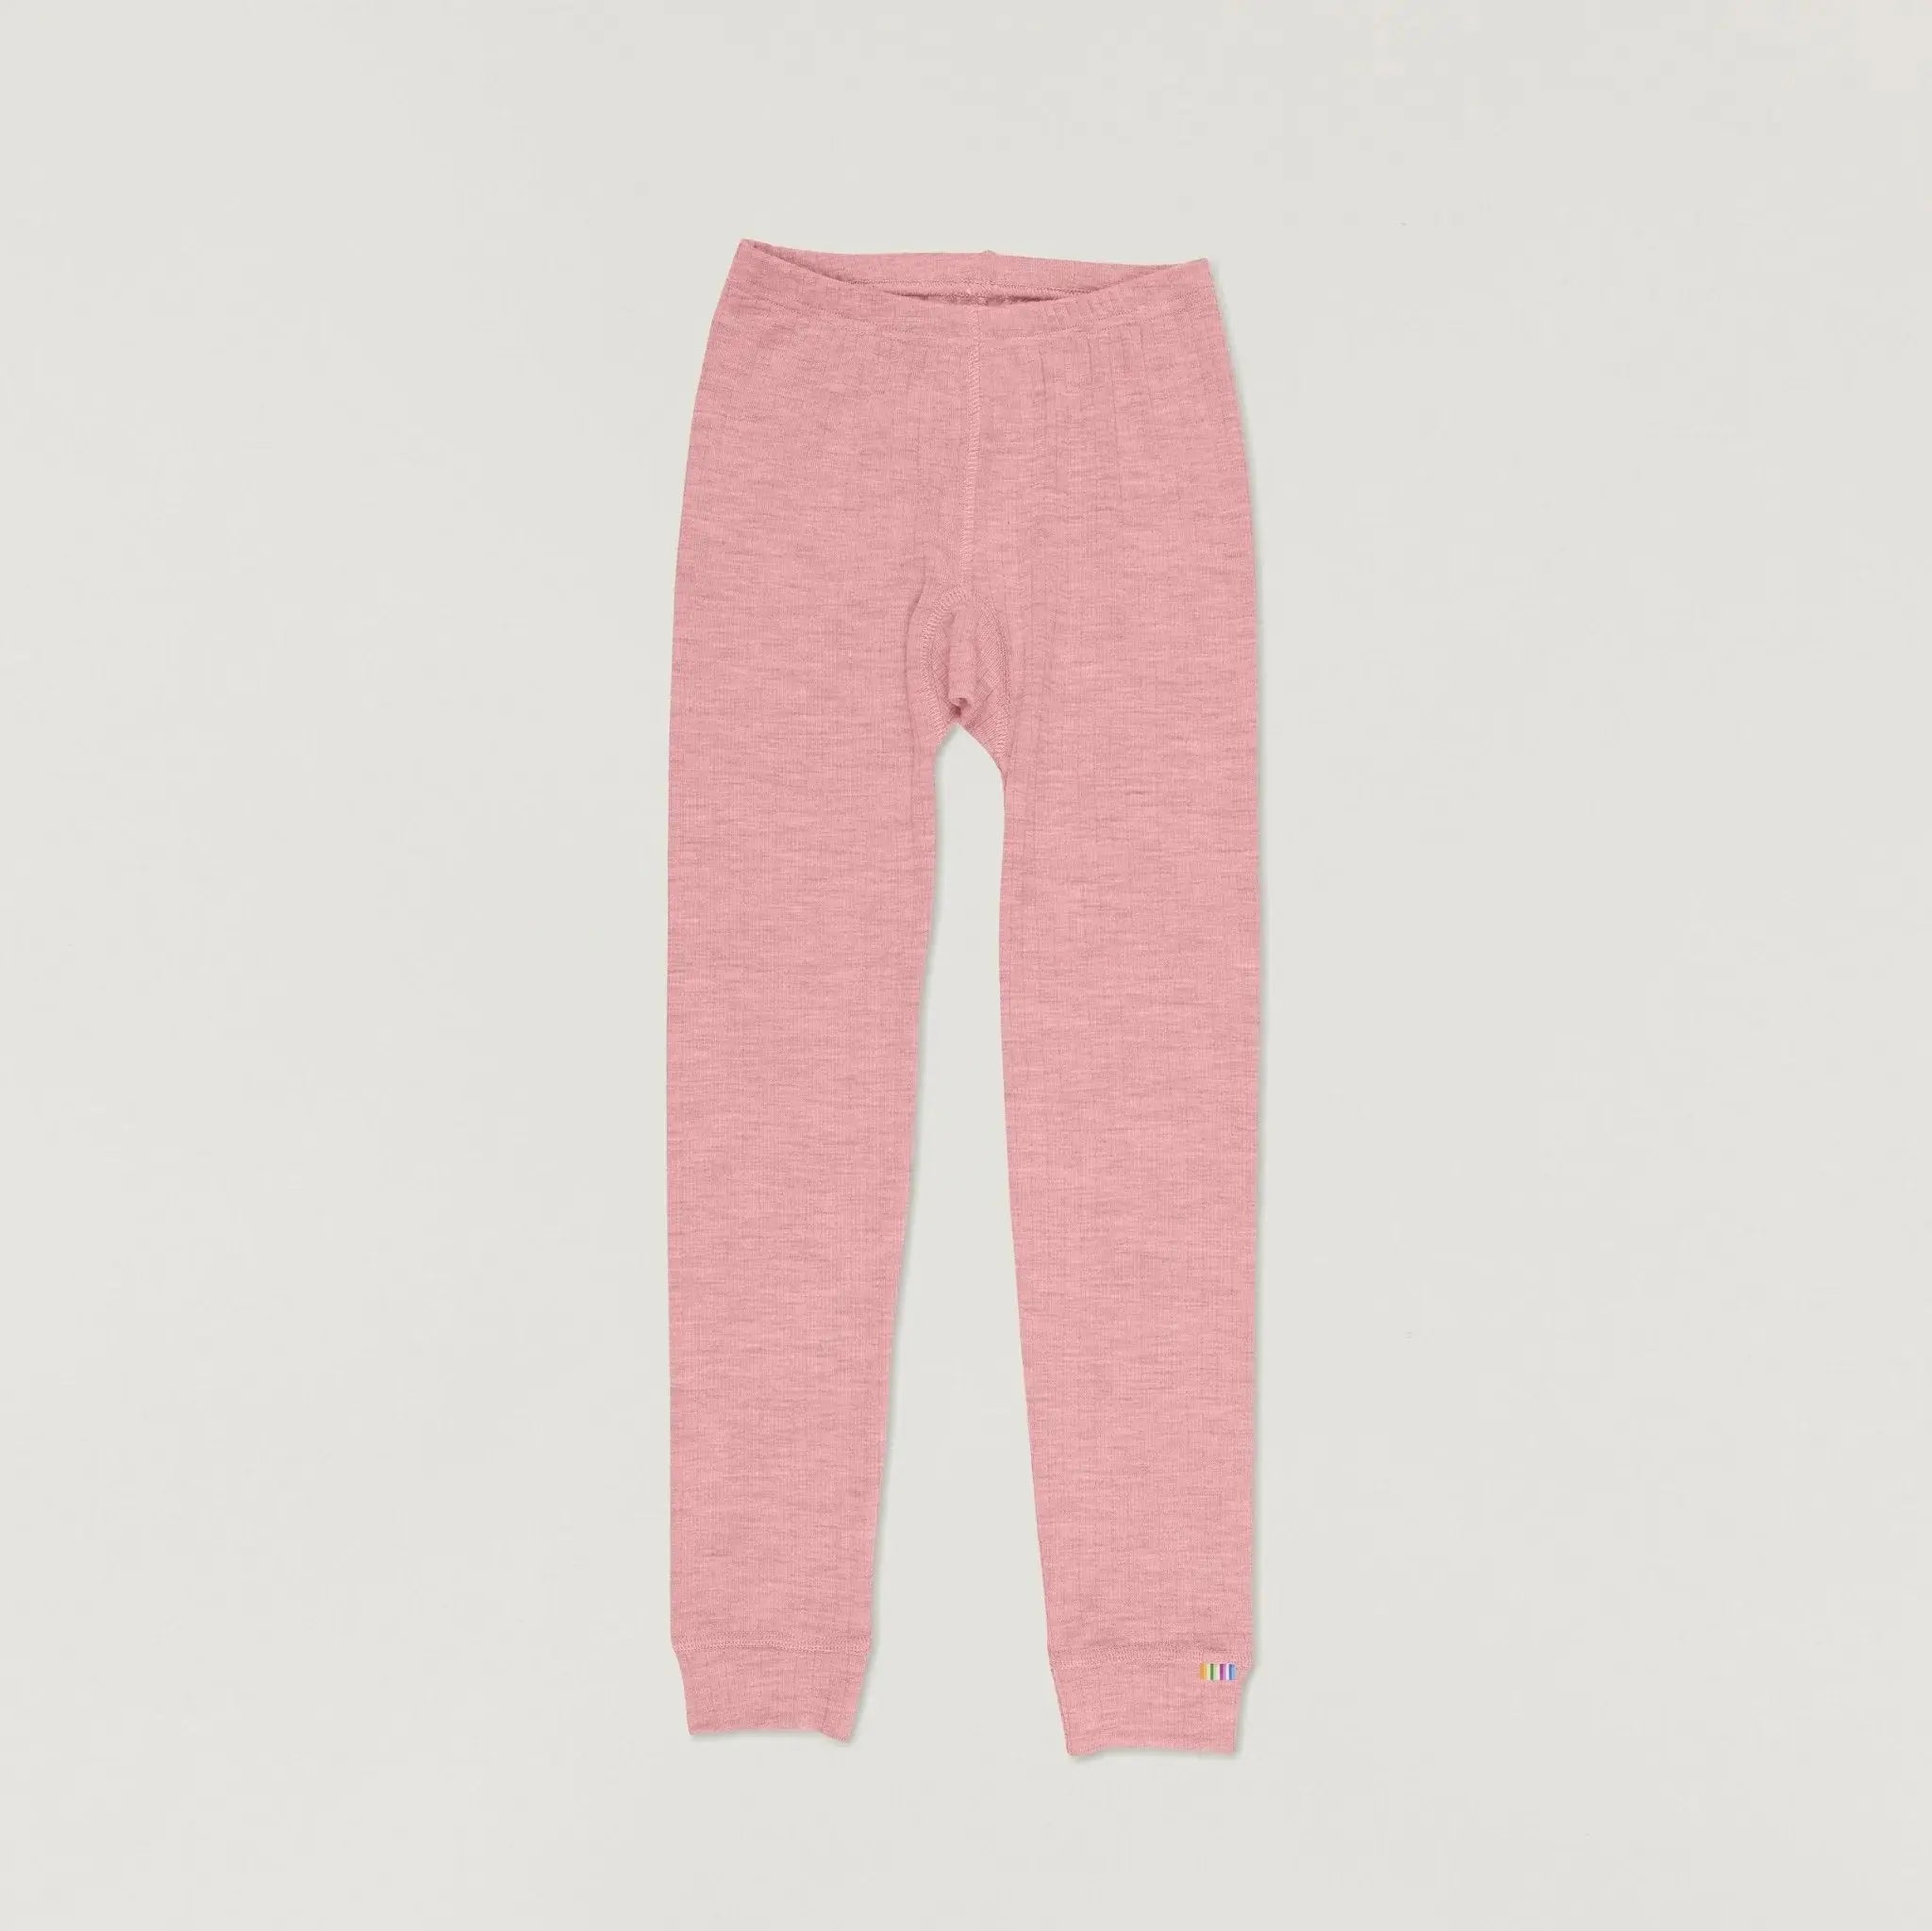 Wool leggings in dusky pink